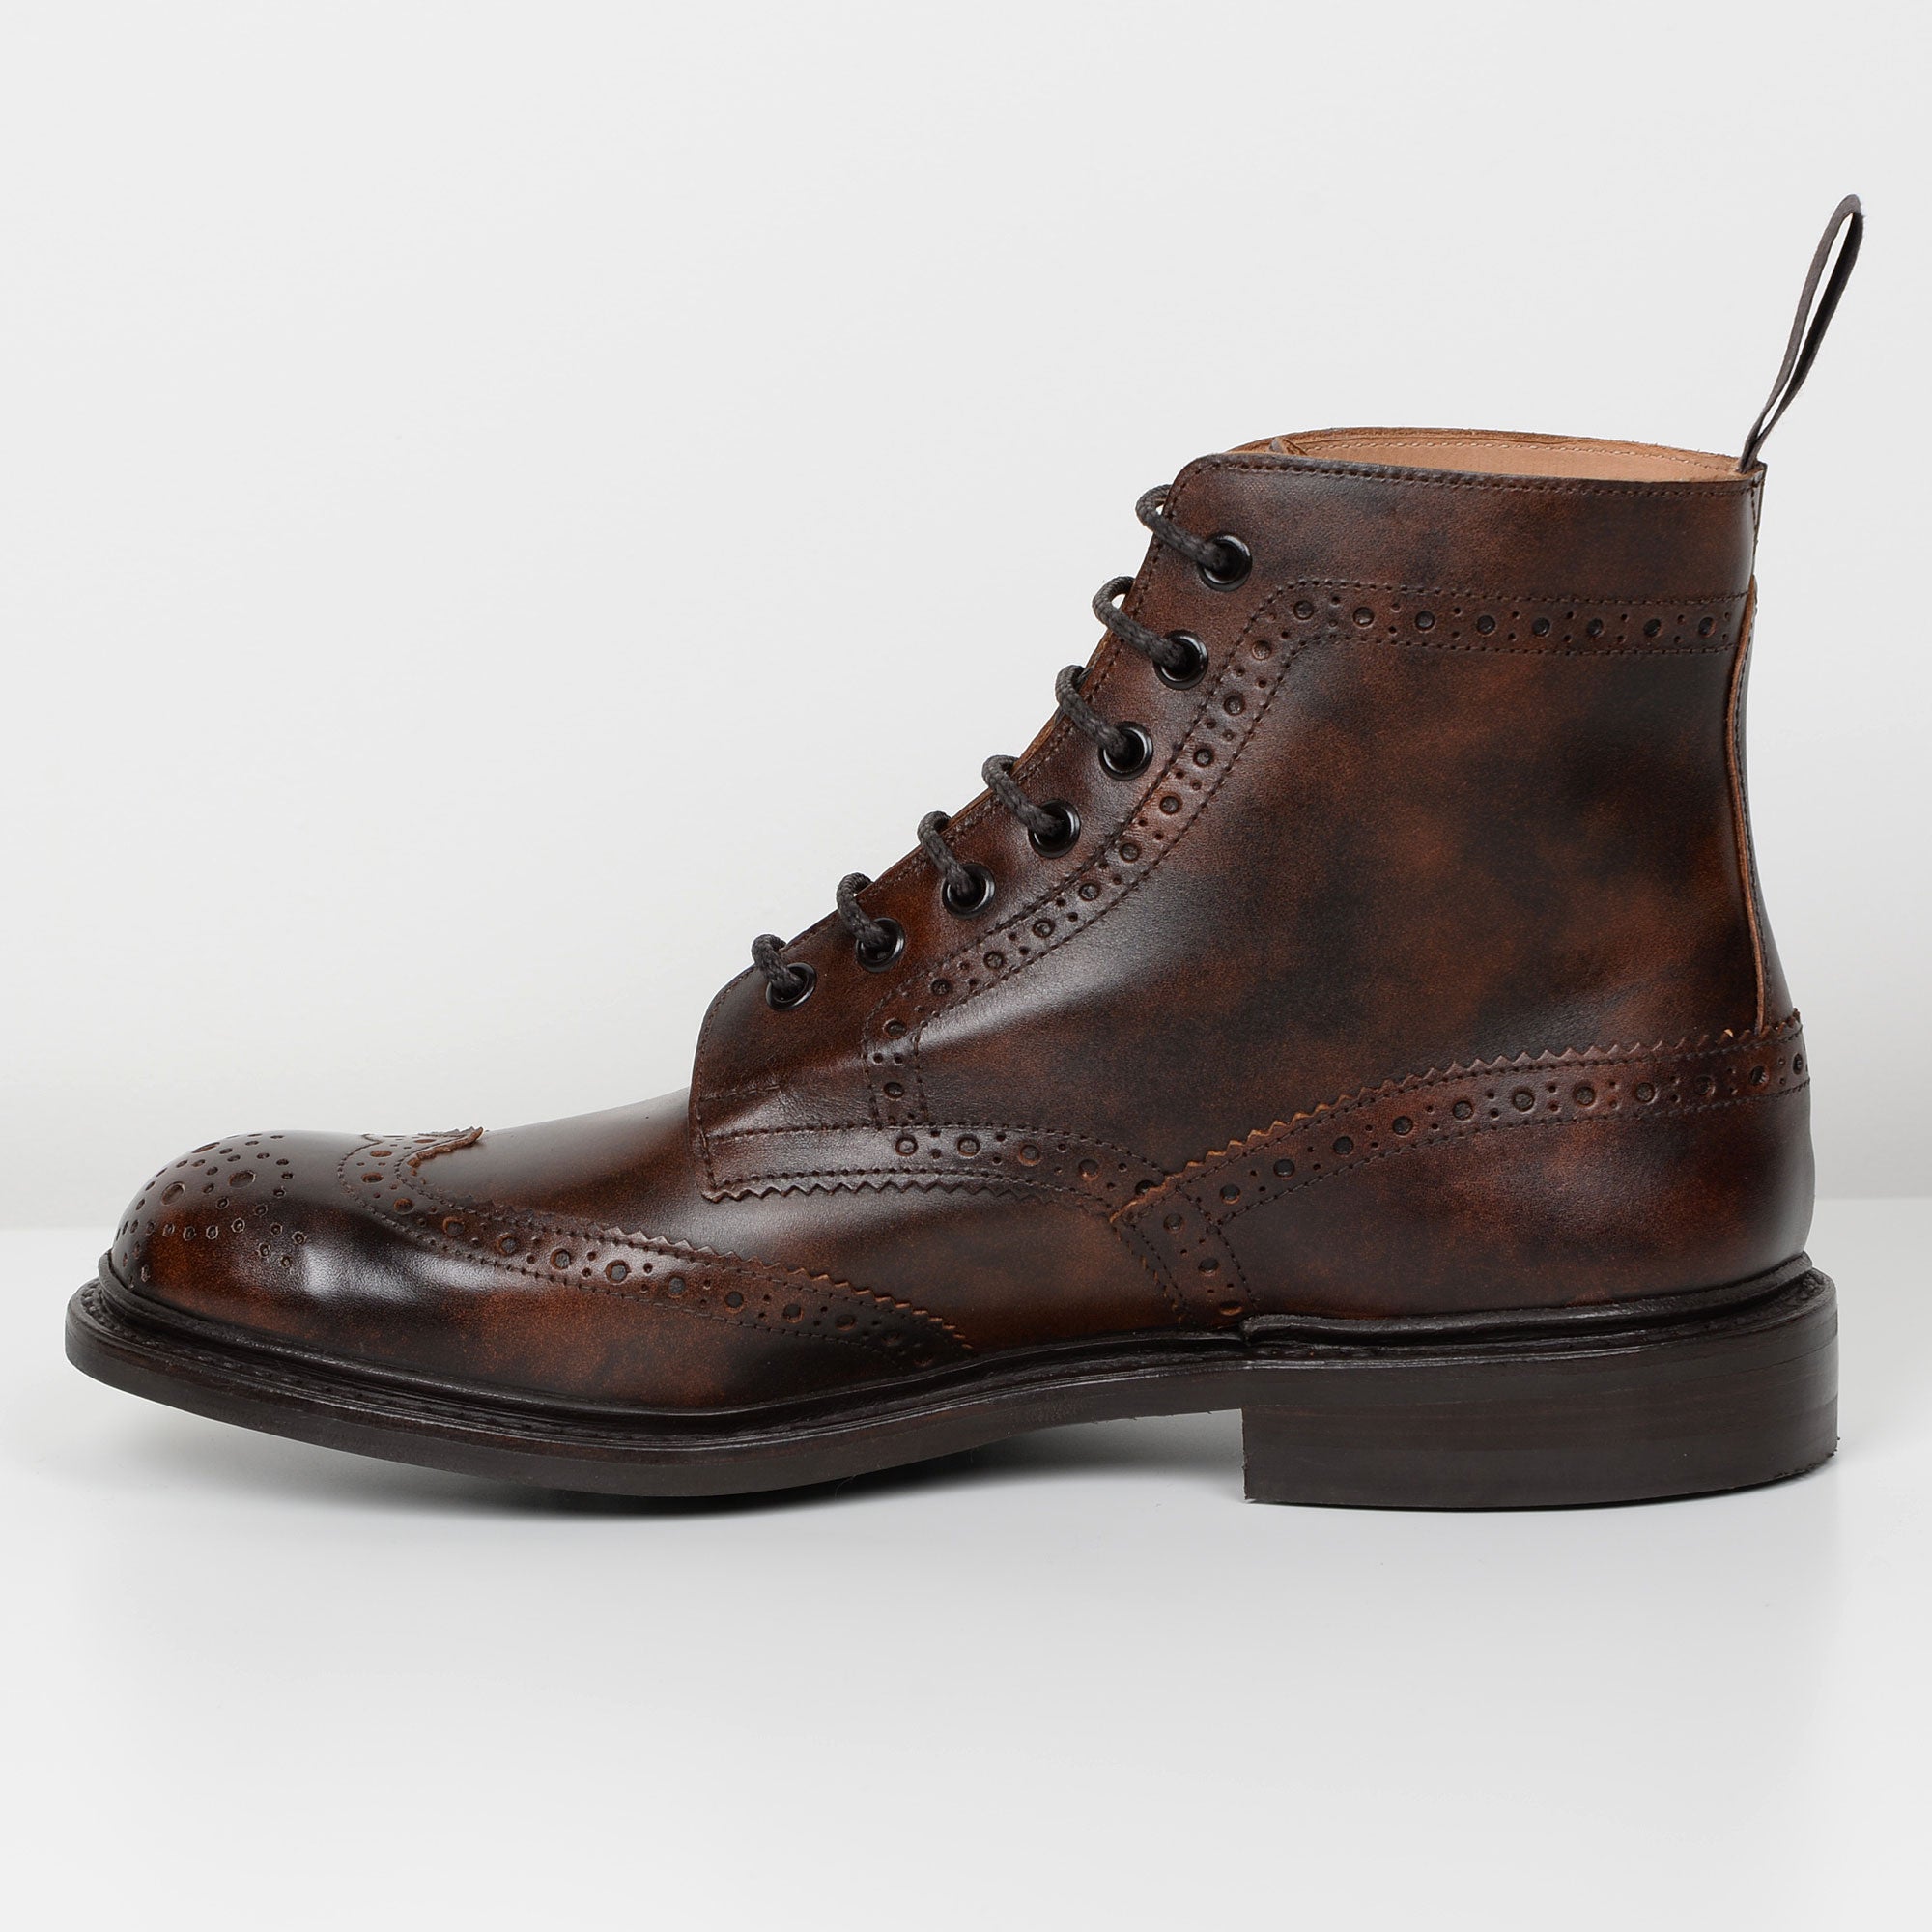 Stow Dark Brown 5634/69 Dainite Tricker's Derby Brogue Boots